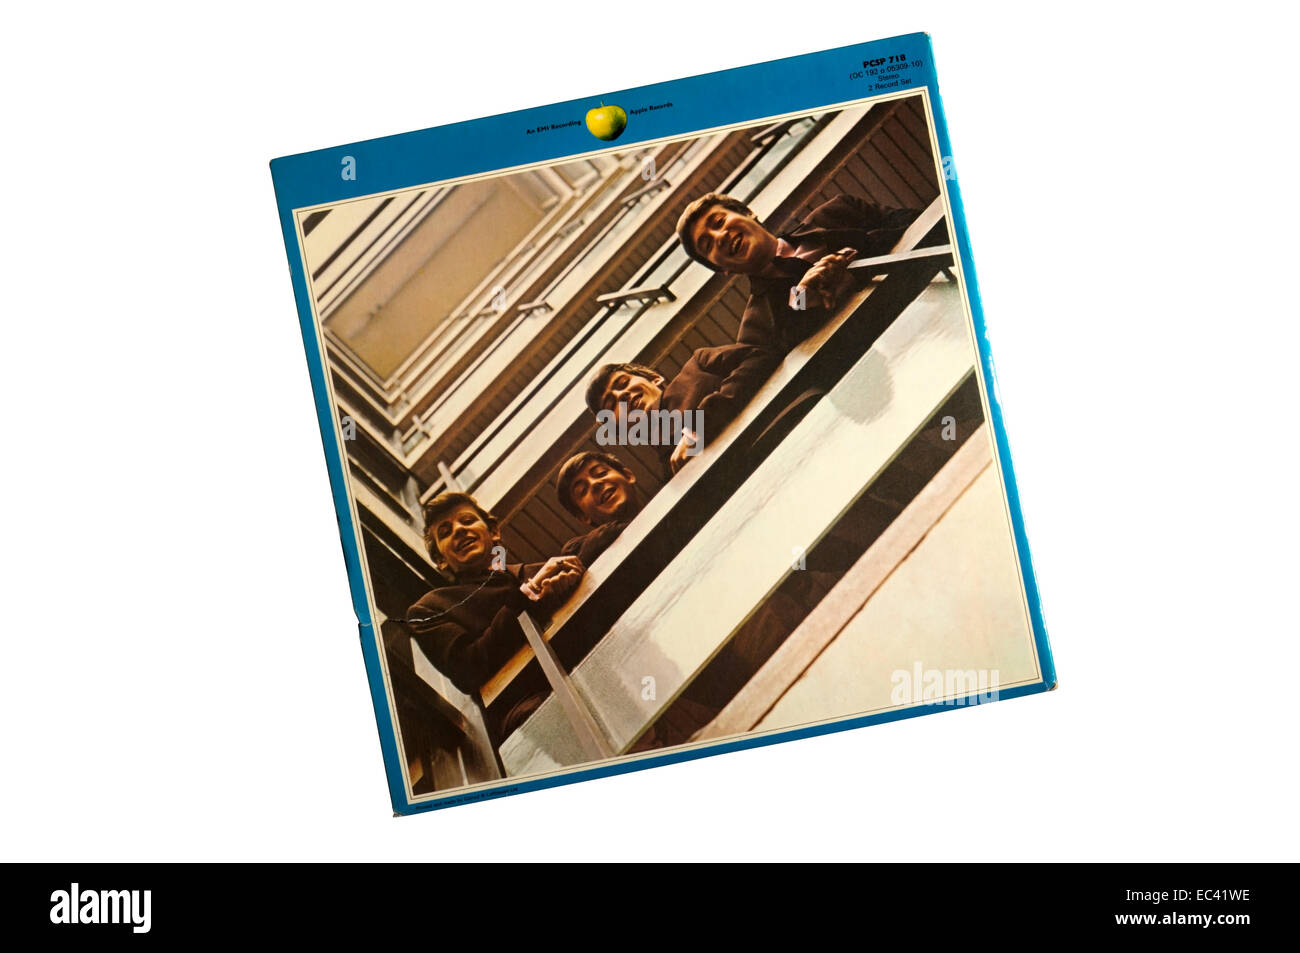 Auch bekannt als ist "The Blue Album", The Beatles 1967-1970 ein Compilation-Album erschien im Jahr 1973. Foto zeigt die Rückseite der Hülle. Stockfoto